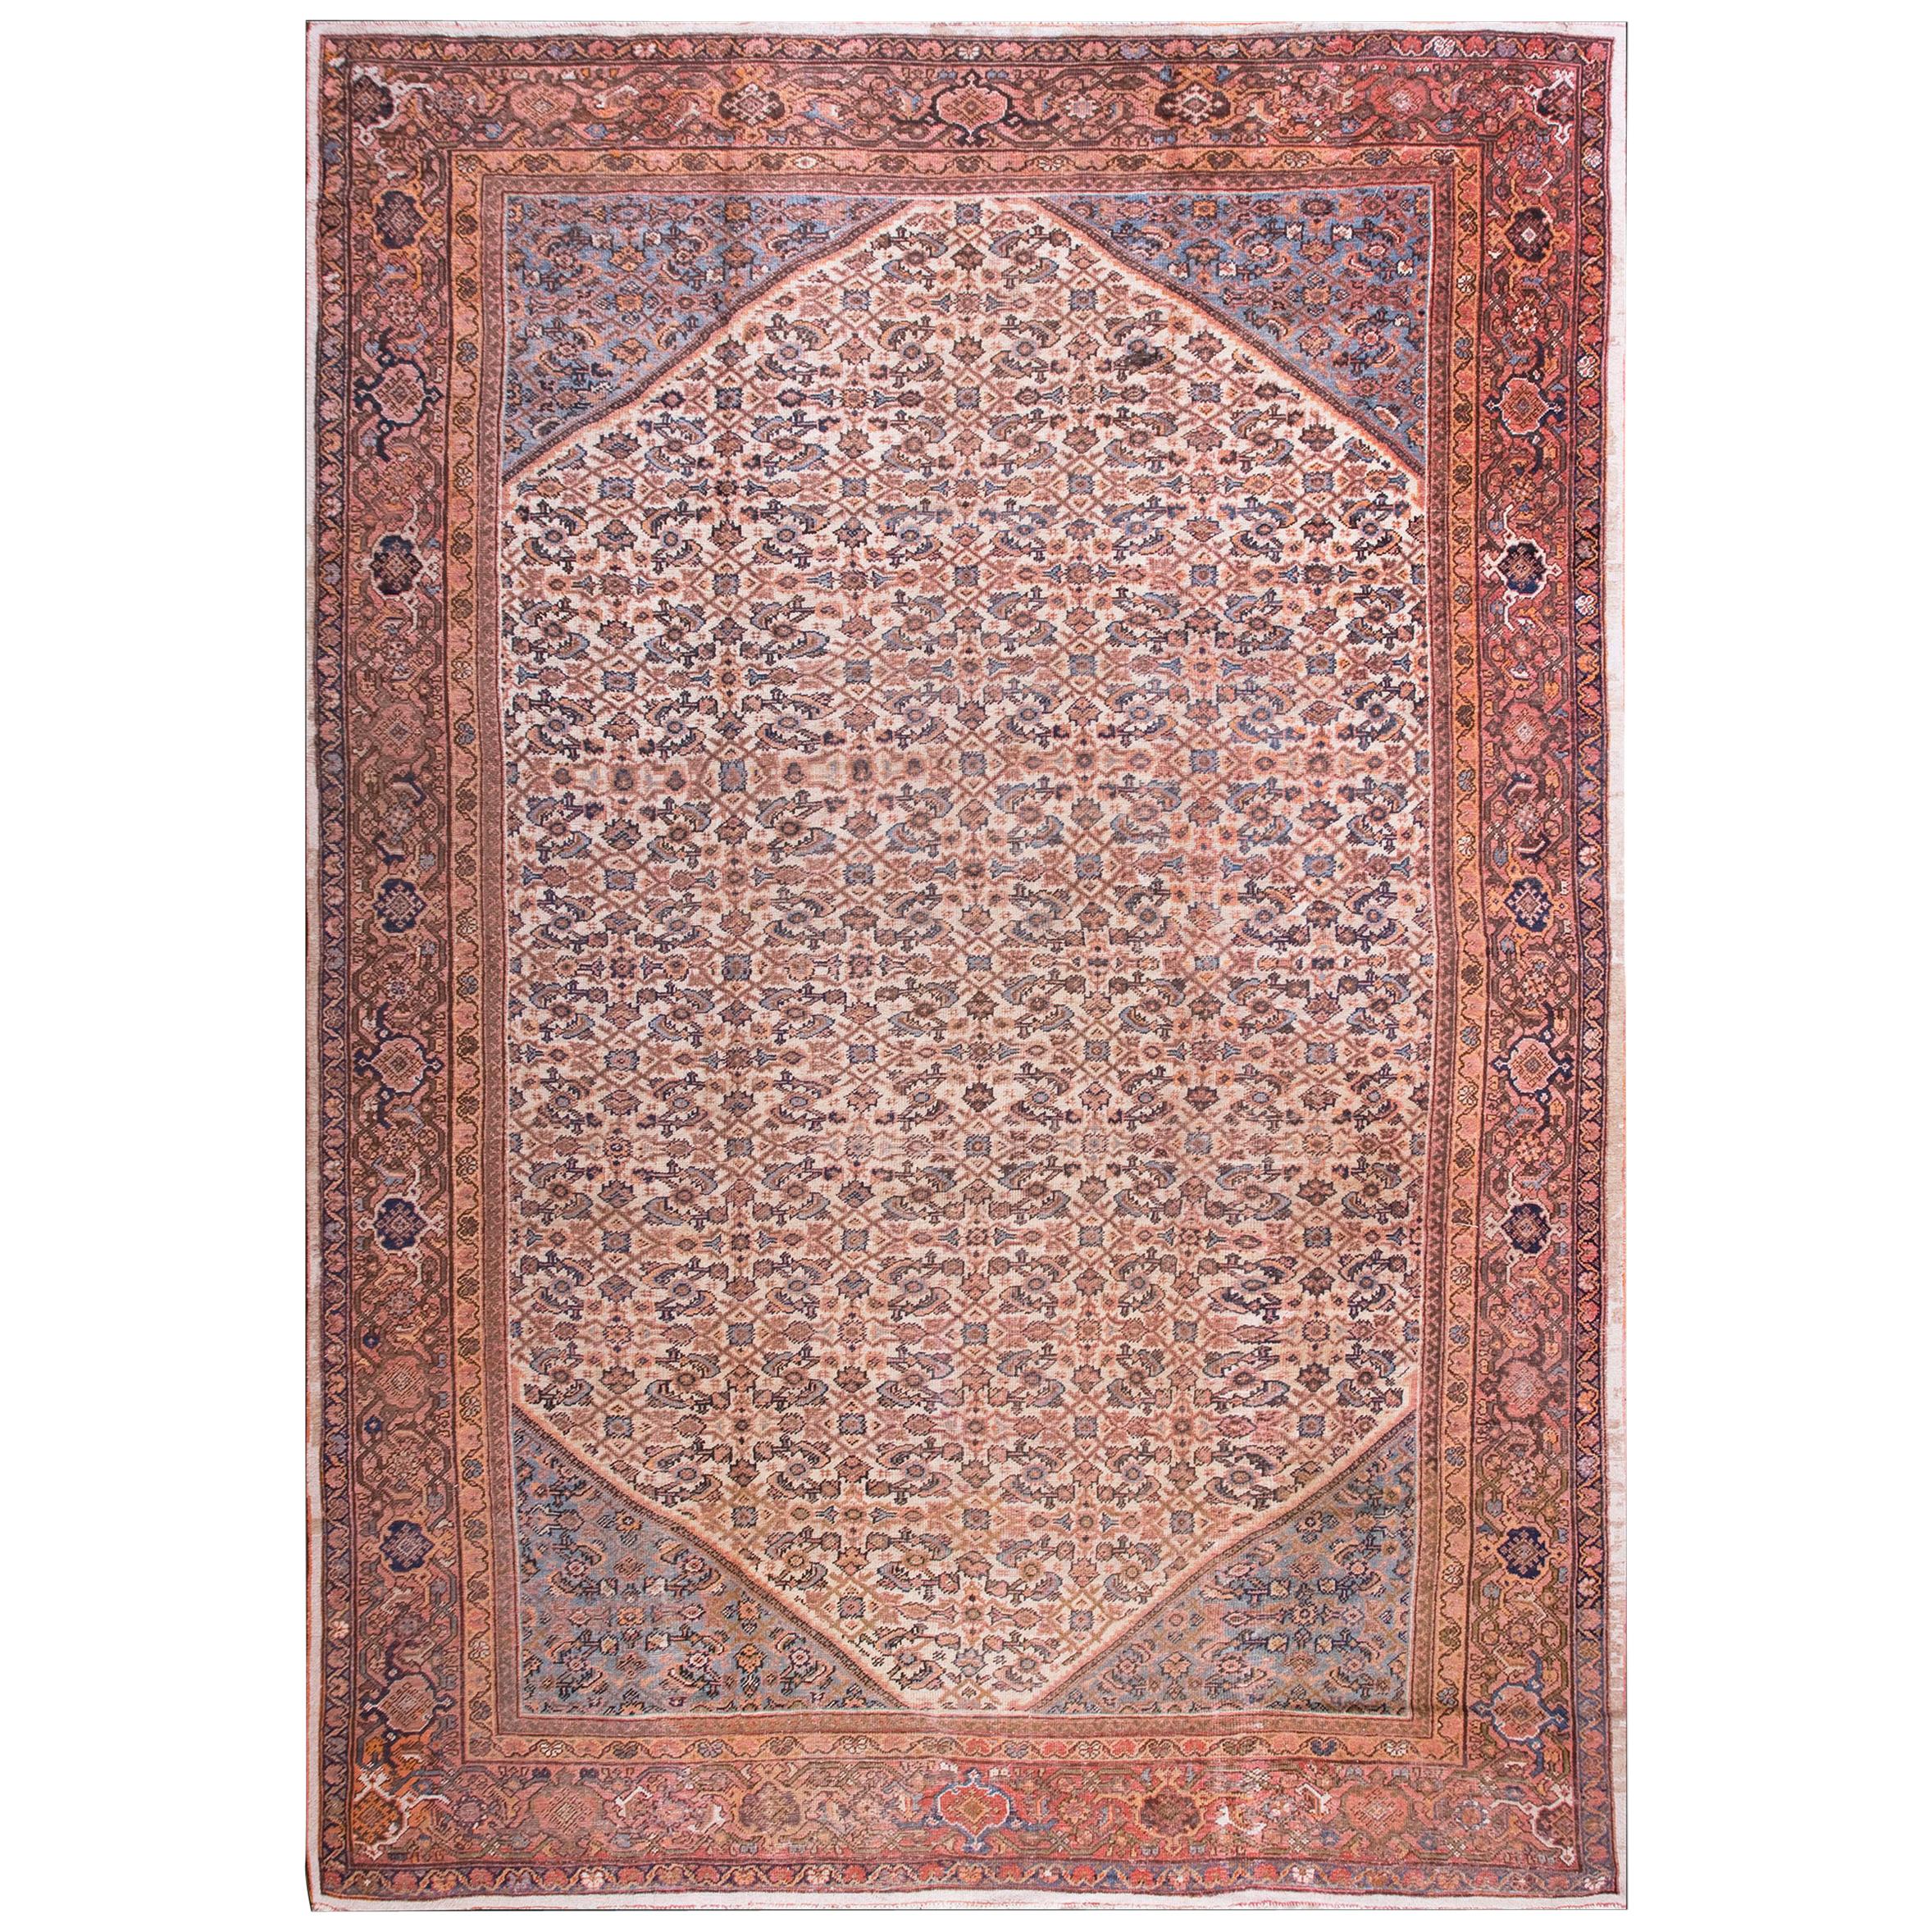 Early 20th Century Persian Mahal Carpet ( 11'10" x 16' - 360 x 488 )